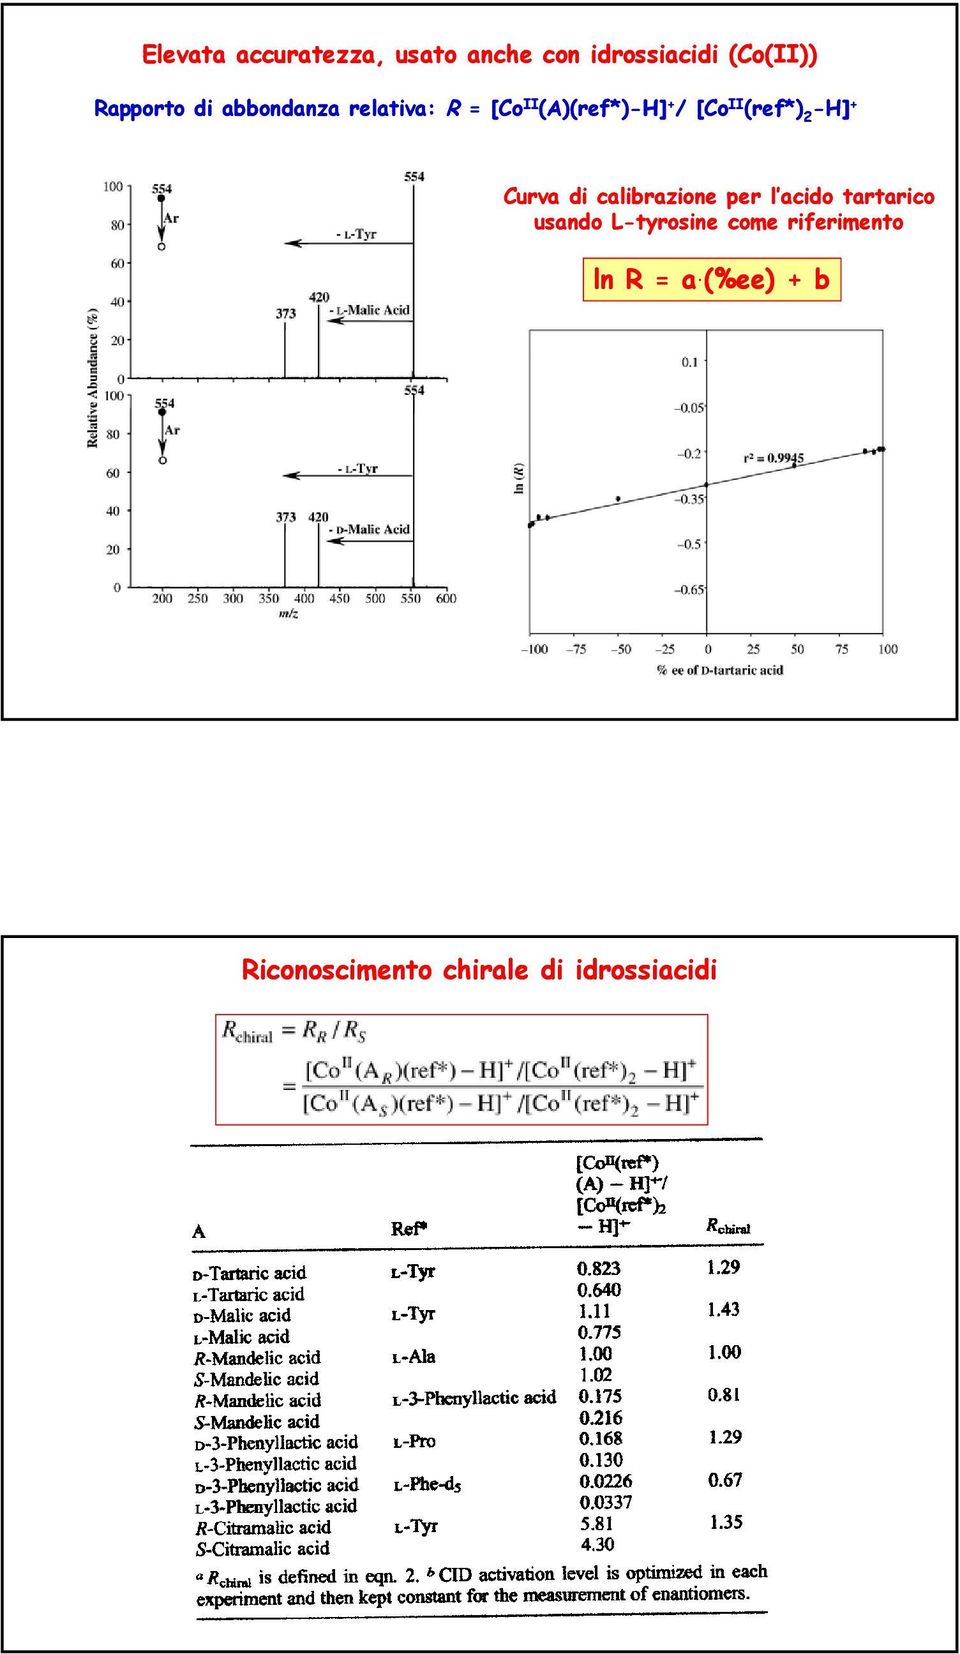 -H] + Curva di calibrazione per l acido tartarico usando L-tyrosine